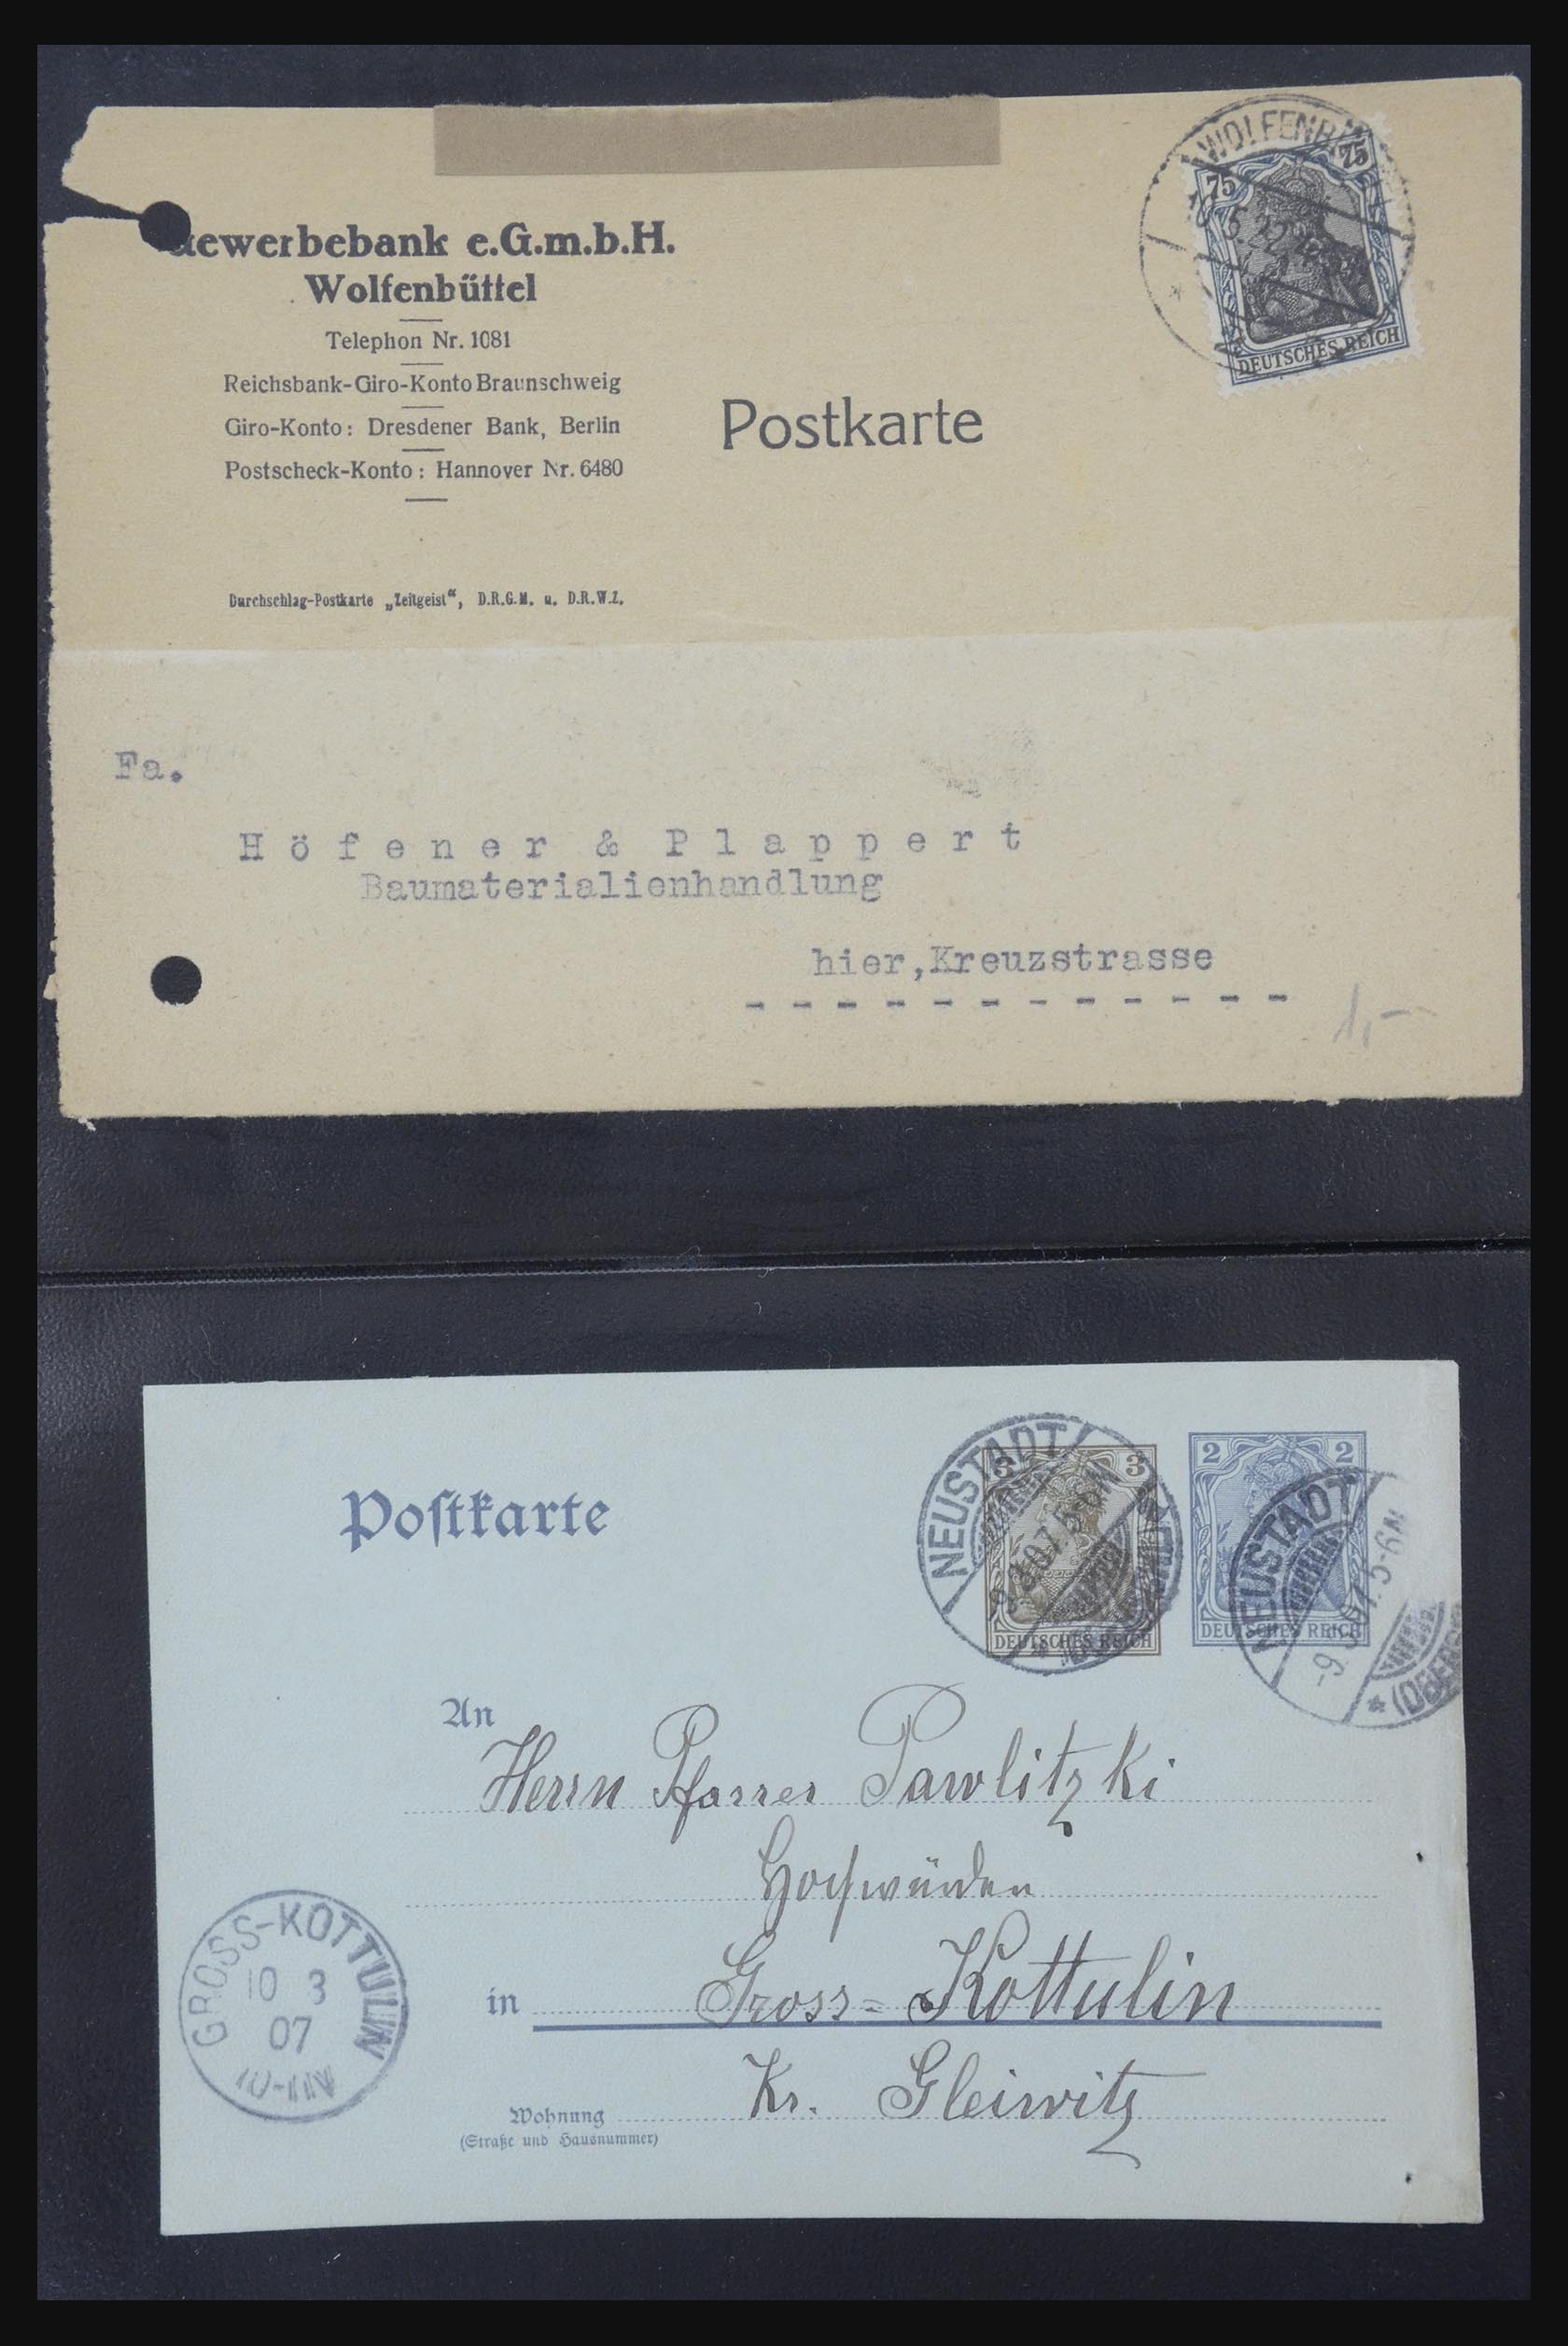 31952 415 - 31952 German Reich cards.